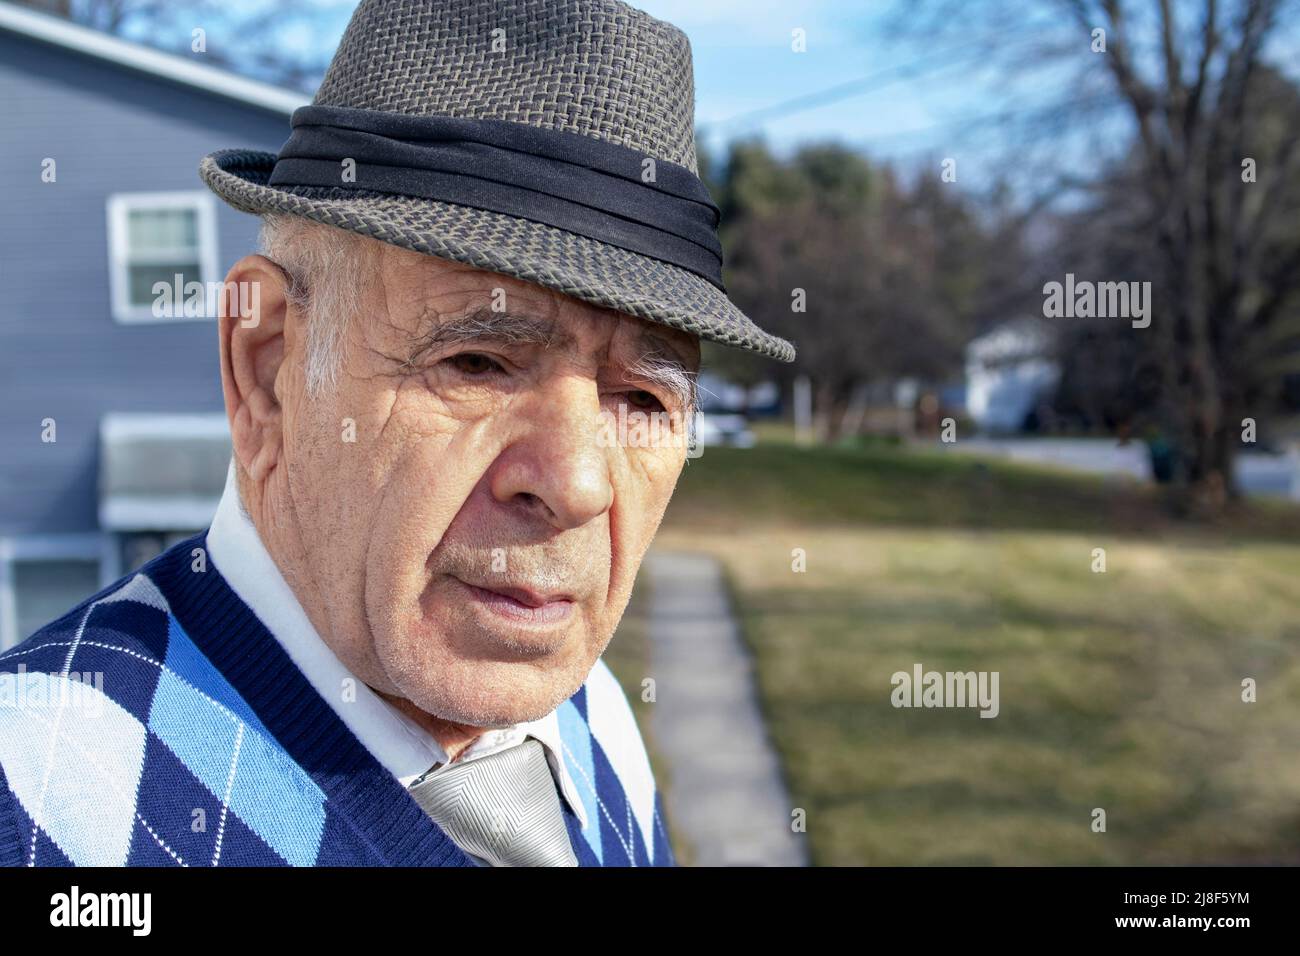 homme caucasien adulte âgé avec gilet décoratif en forme de losange bleu et cravate et chemise sur une rue de banlieue Banque D'Images